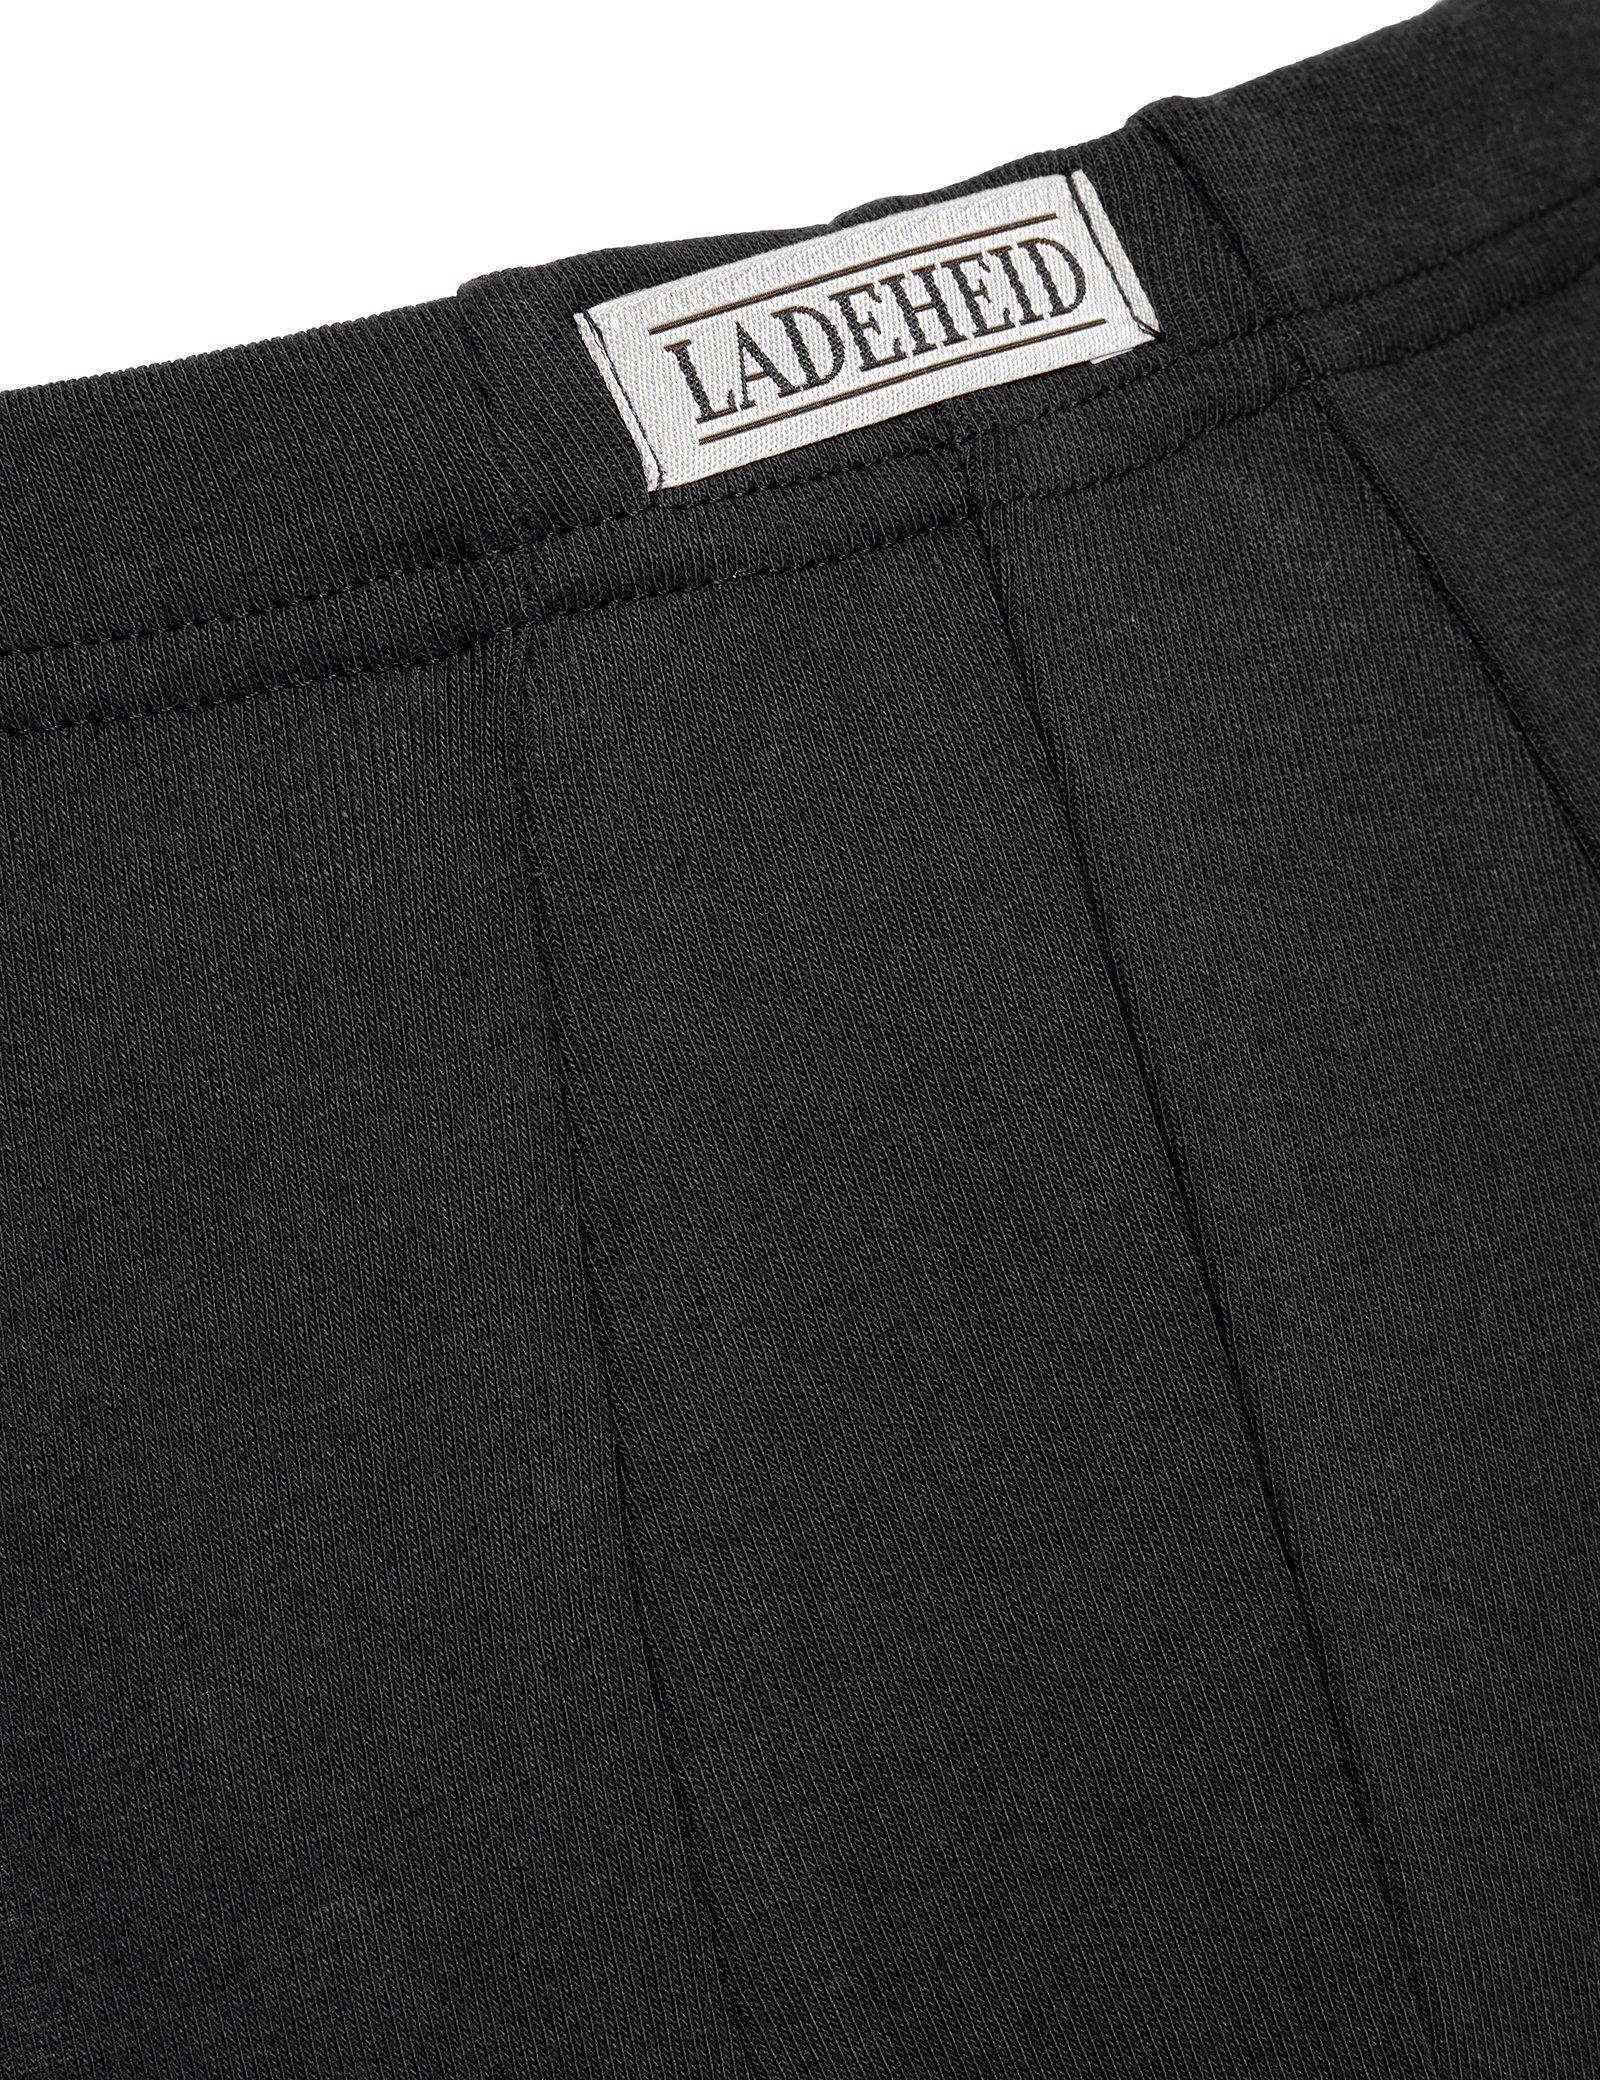 LA40-248 (1-St) Lange Schwarz Unterhose Lange Jungen Unterhose Ladeheid